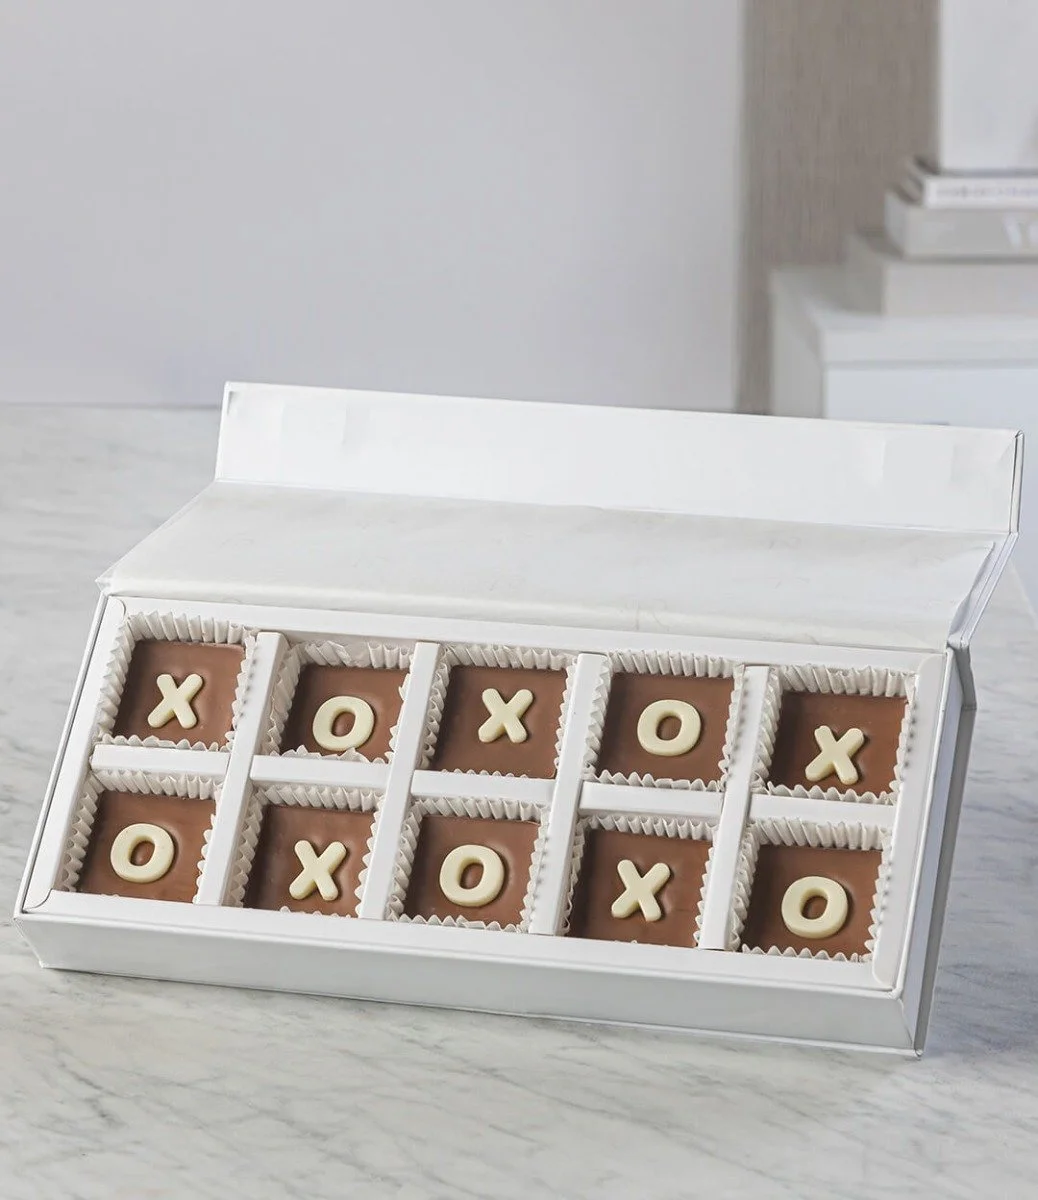 XOXO Chocolates by NJD